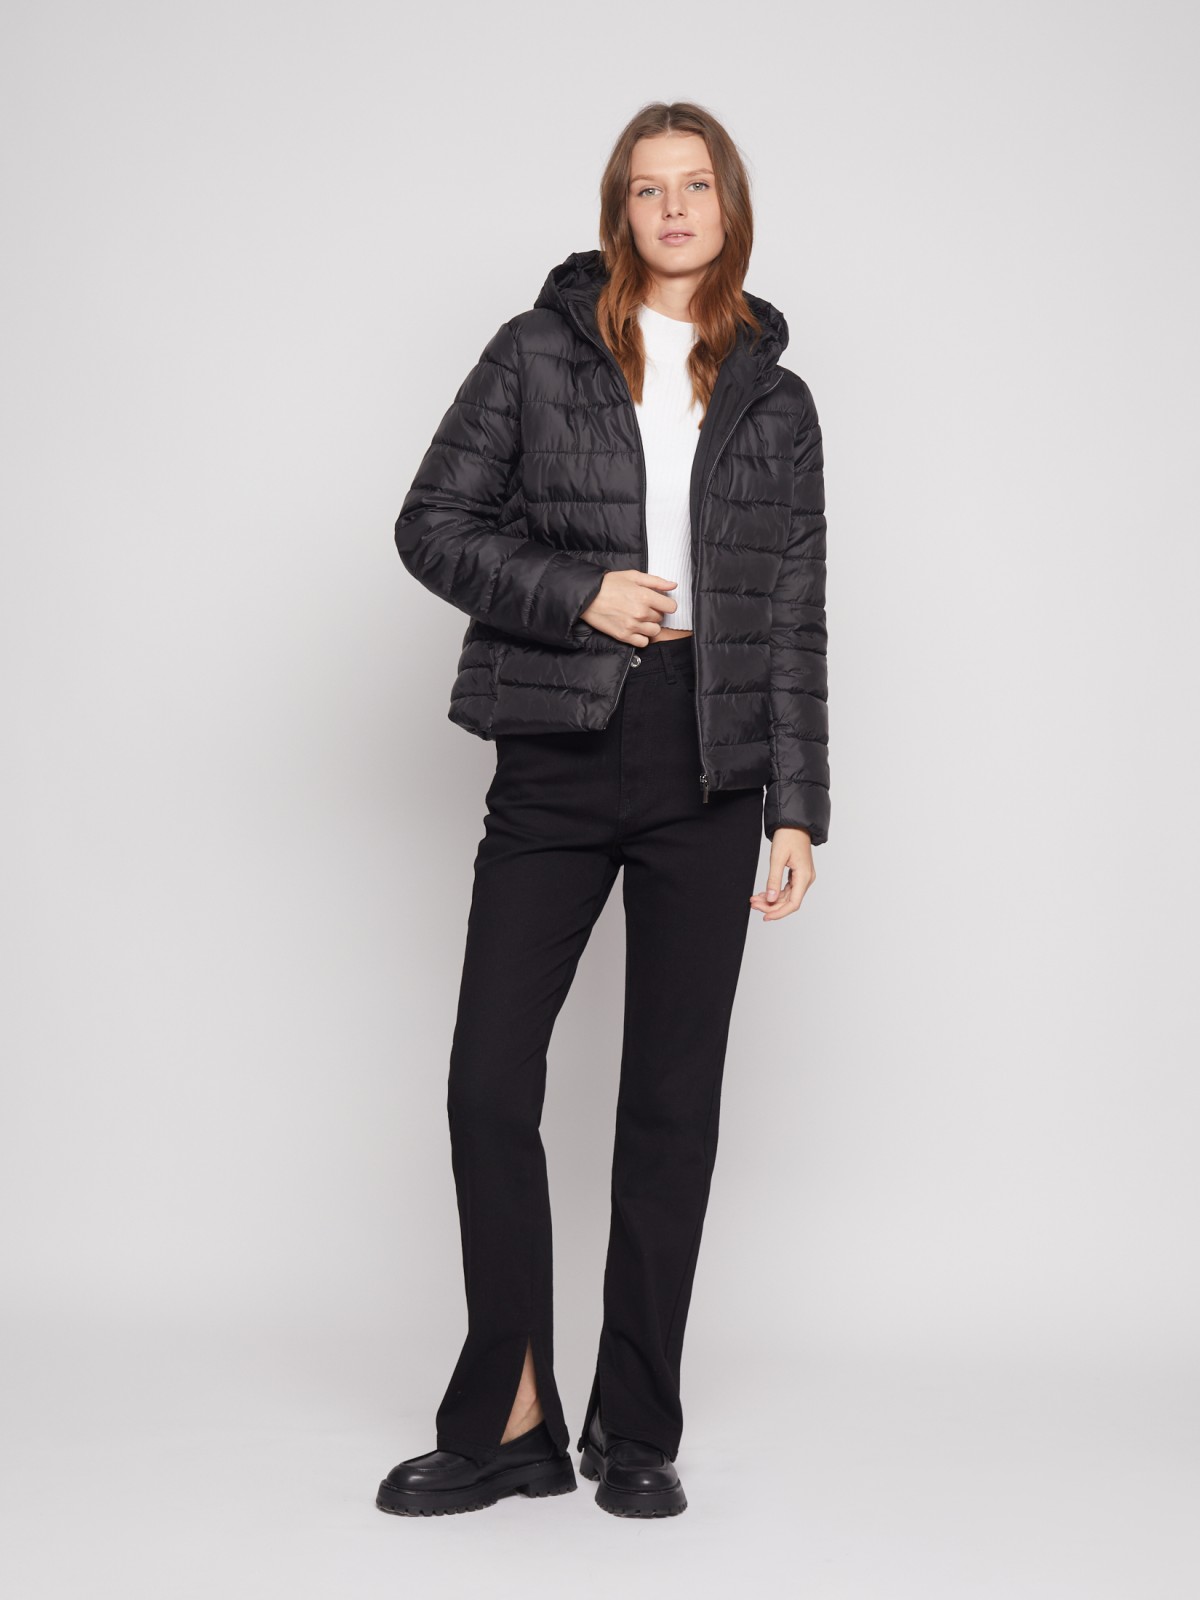 Утеплённая стёганая куртка с капюшоном zolla 022335112044, цвет черный, размер S - фото 2